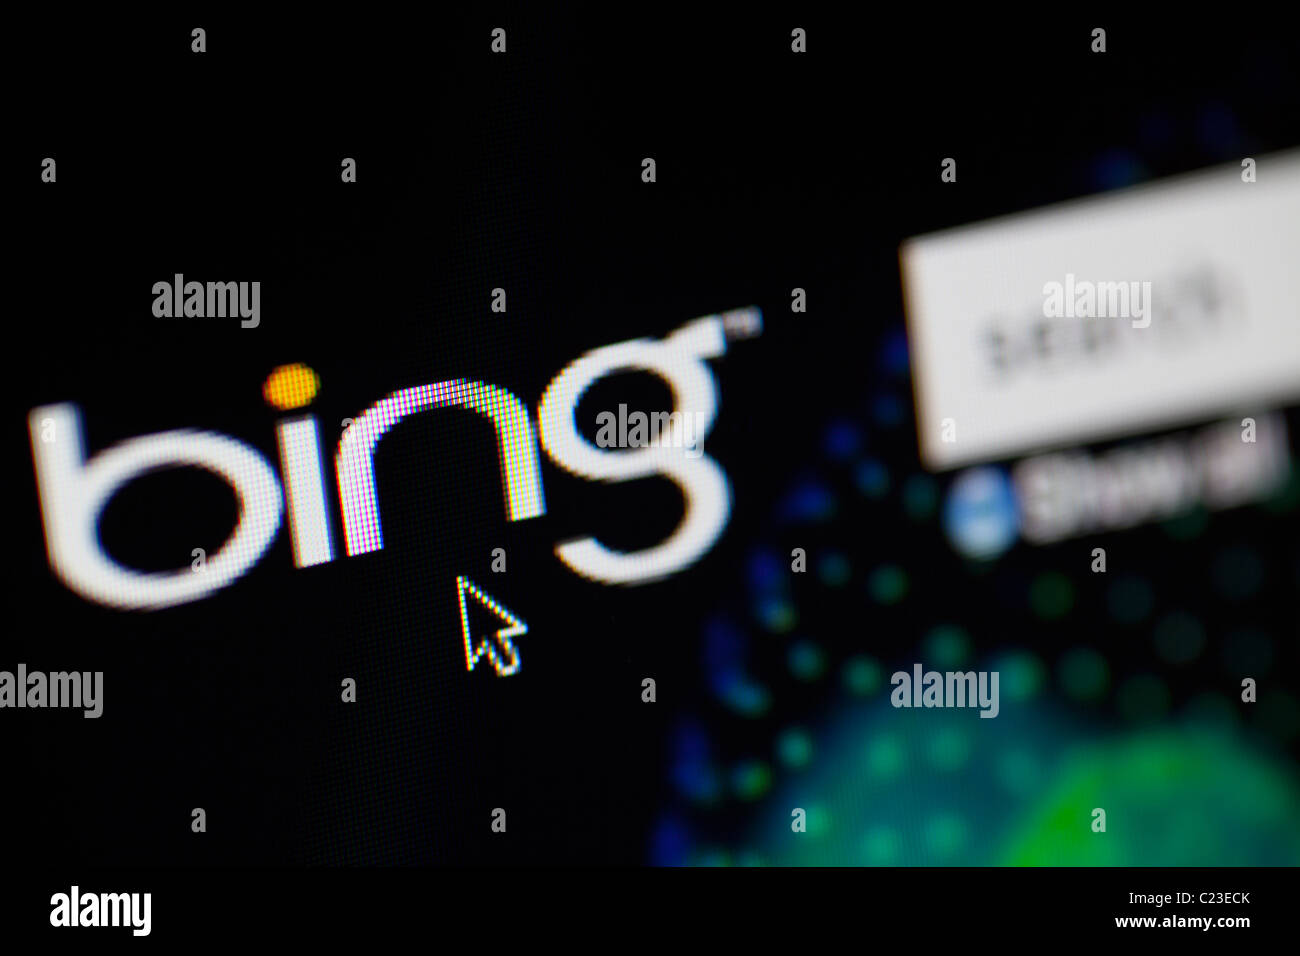 Internet Moteur de recherche Bing de Microsoft Banque D'Images